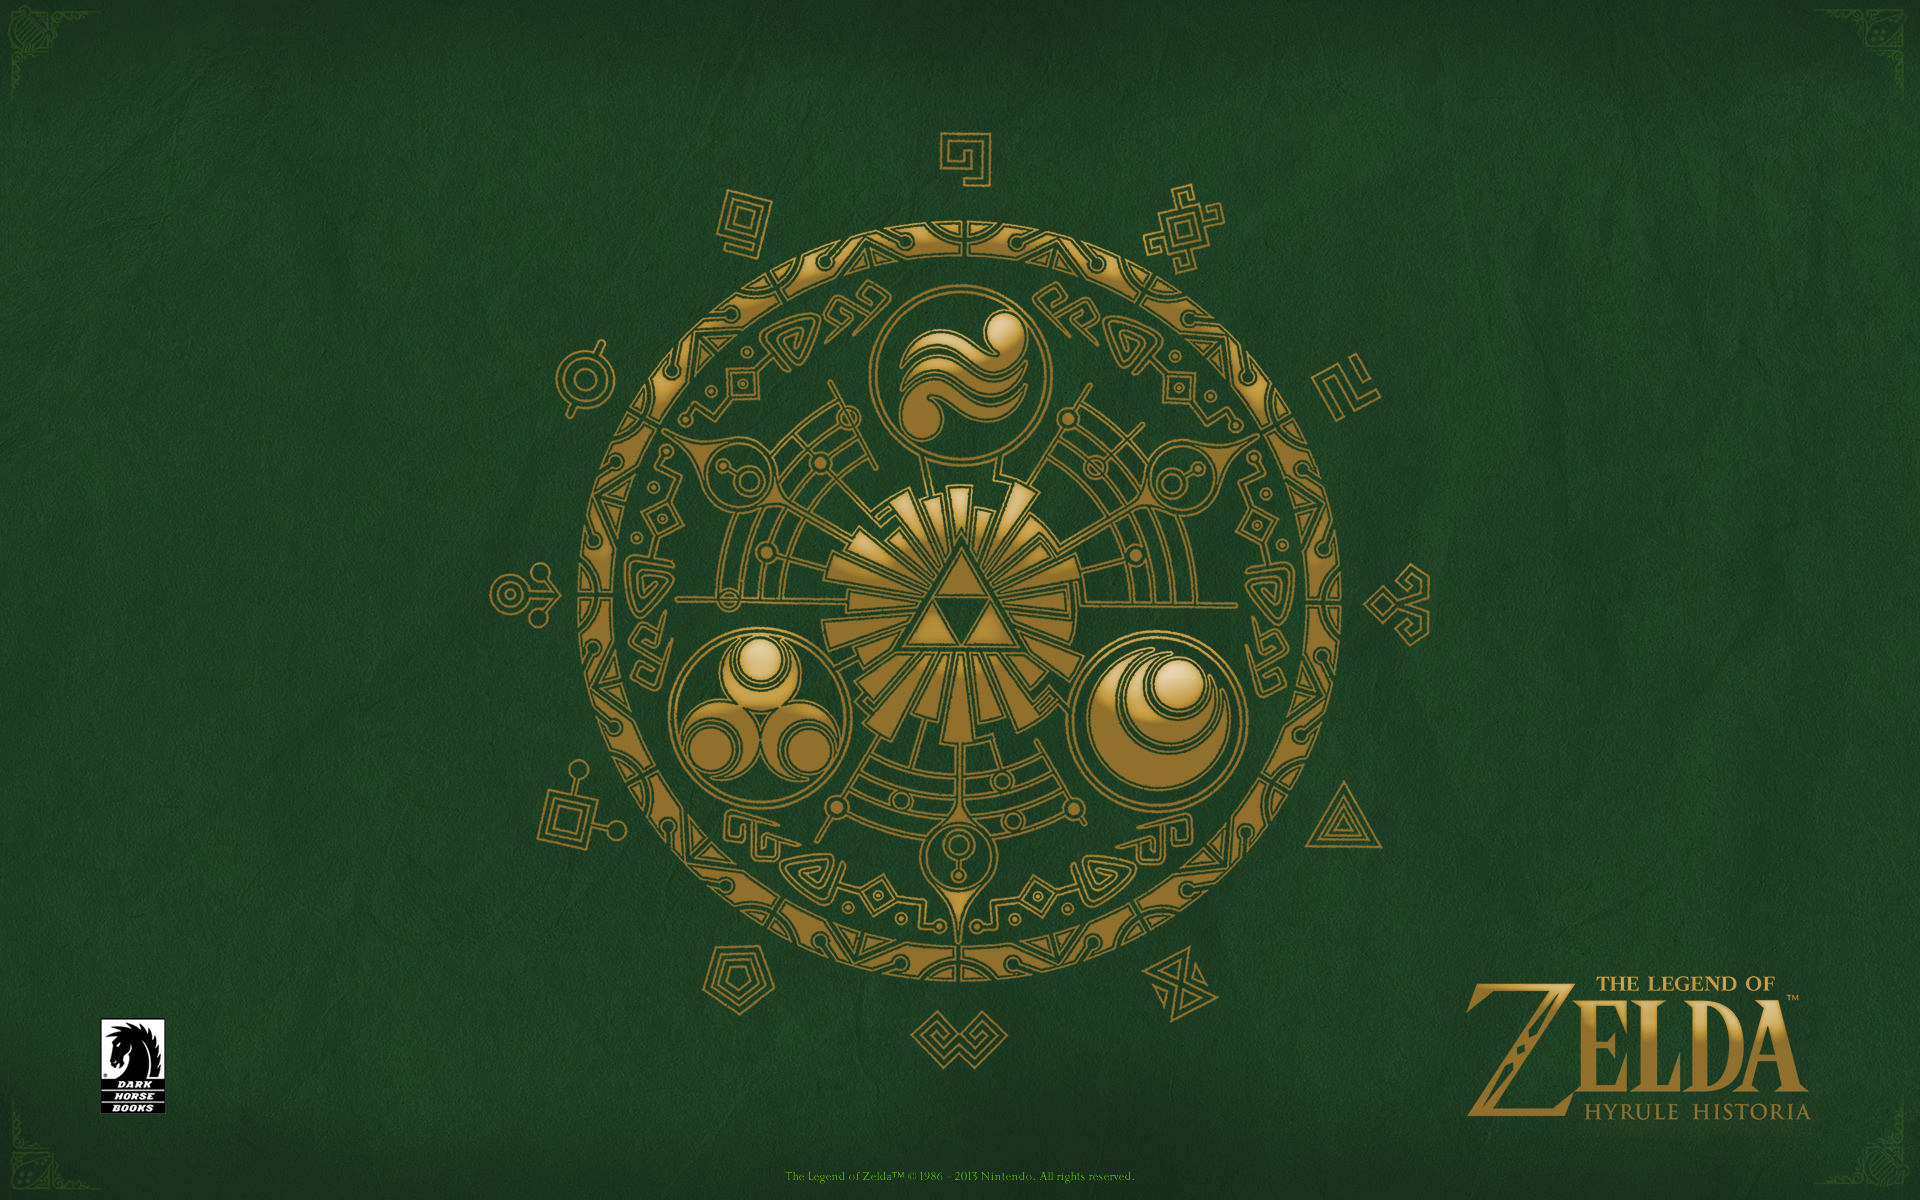 The Legend of Zelda Desktops Dark Horse Comics